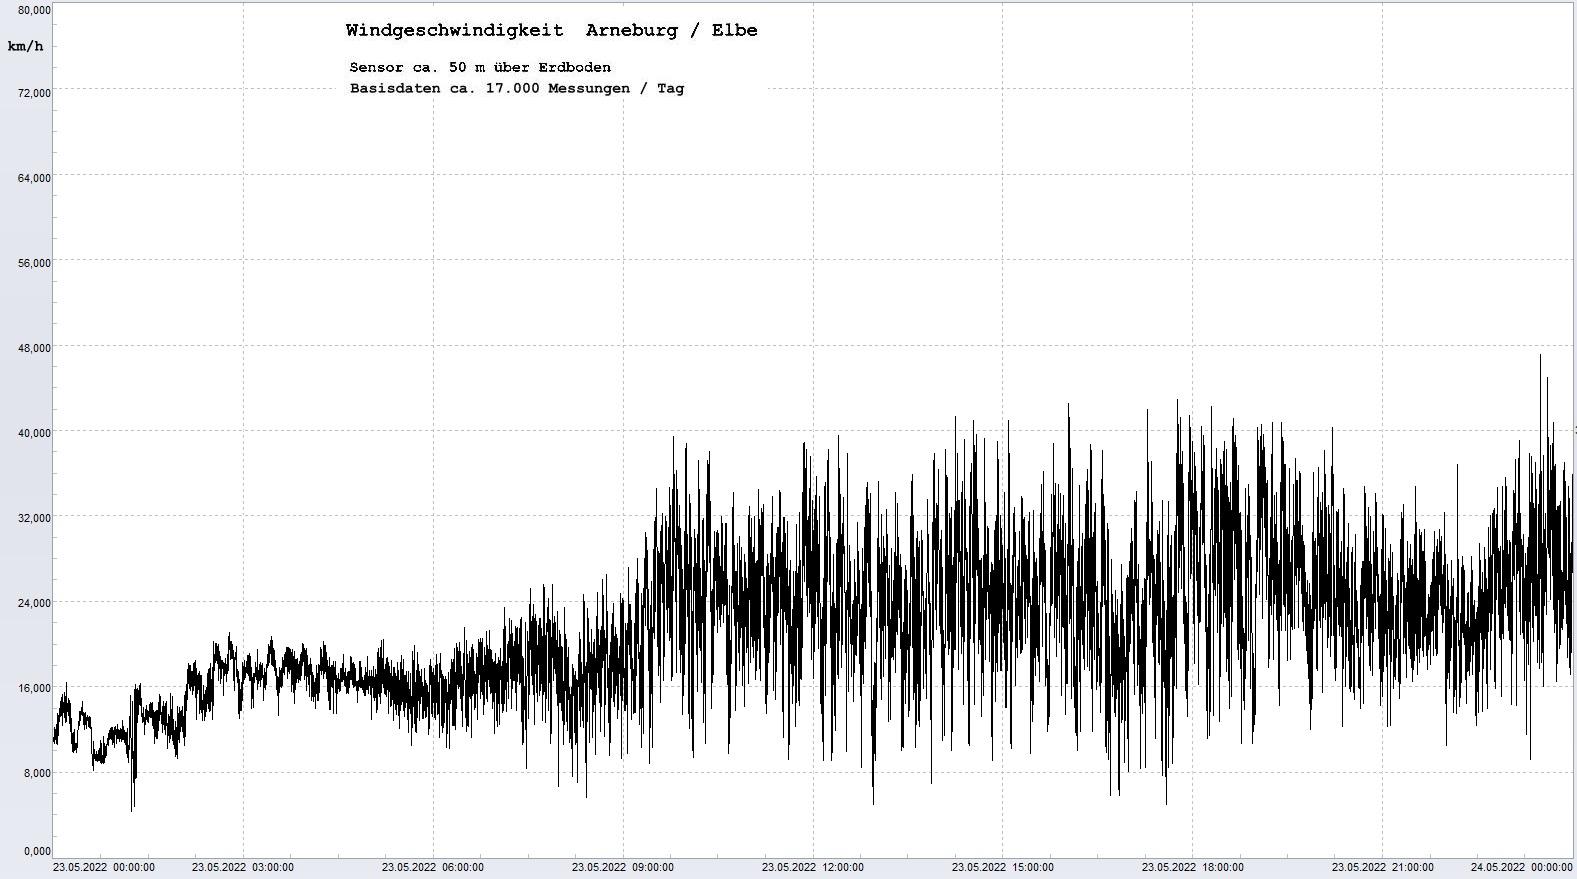 Arneburg Tages-Diagramm Winddaten, 23.05.2022
  Diagramm, Sensor auf Gebude, ca. 50 m ber Erdboden, Basis: 5s-Aufzeichnung